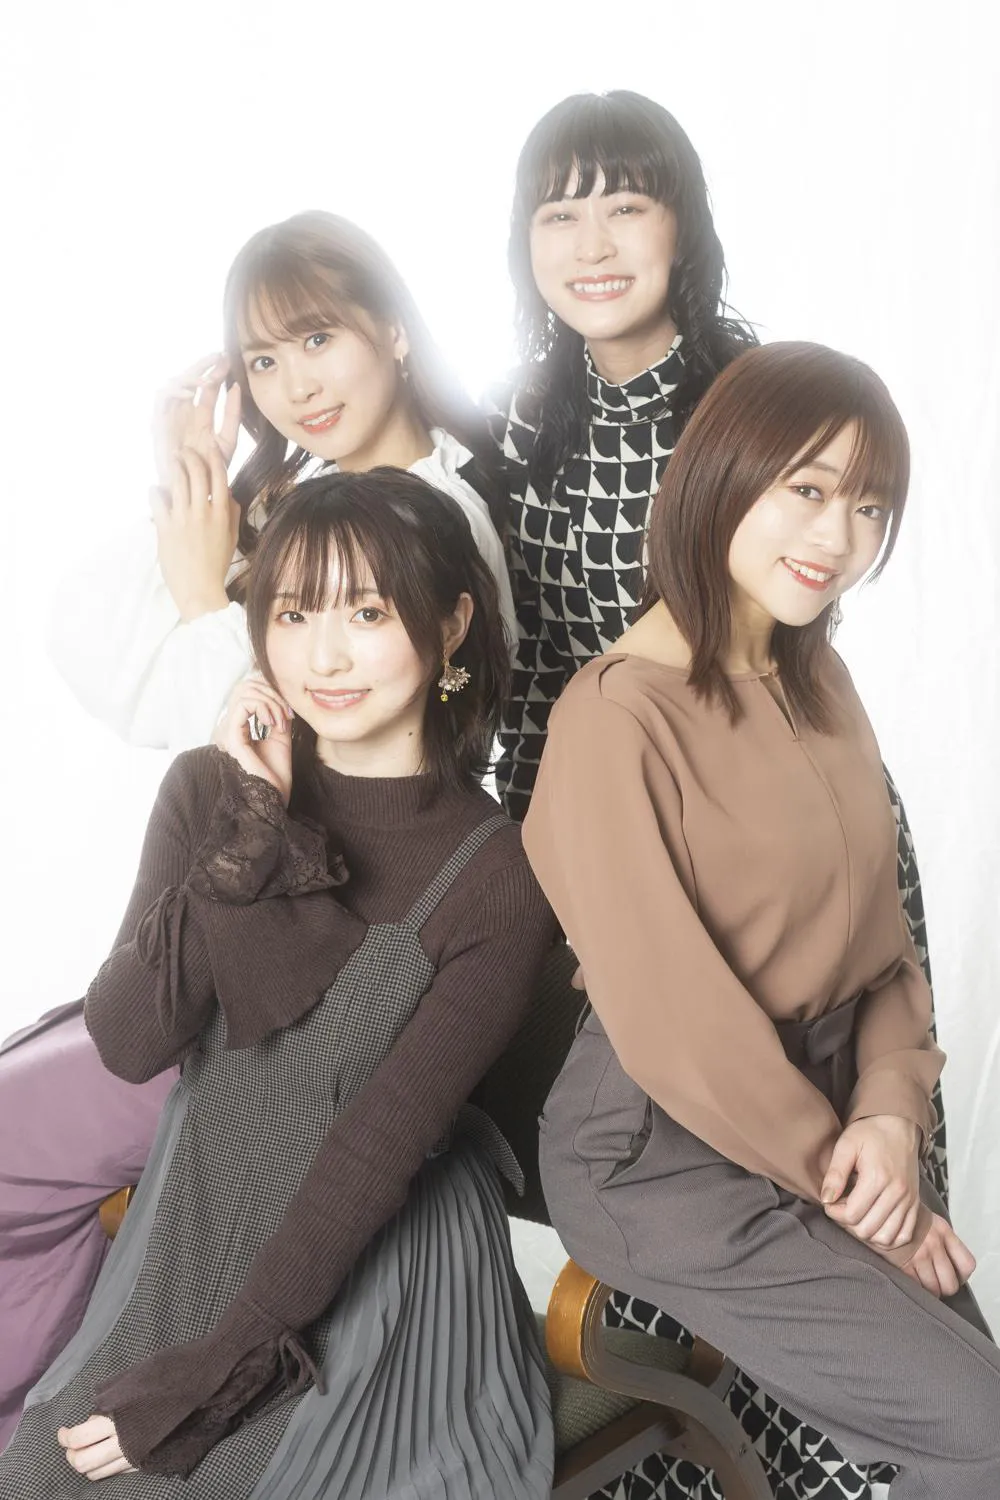 テレビアニメ「やくならマグカップも」メインキャストの田中美海、芹澤優、若井友希、本泉莉奈の4人にインタビューを実施